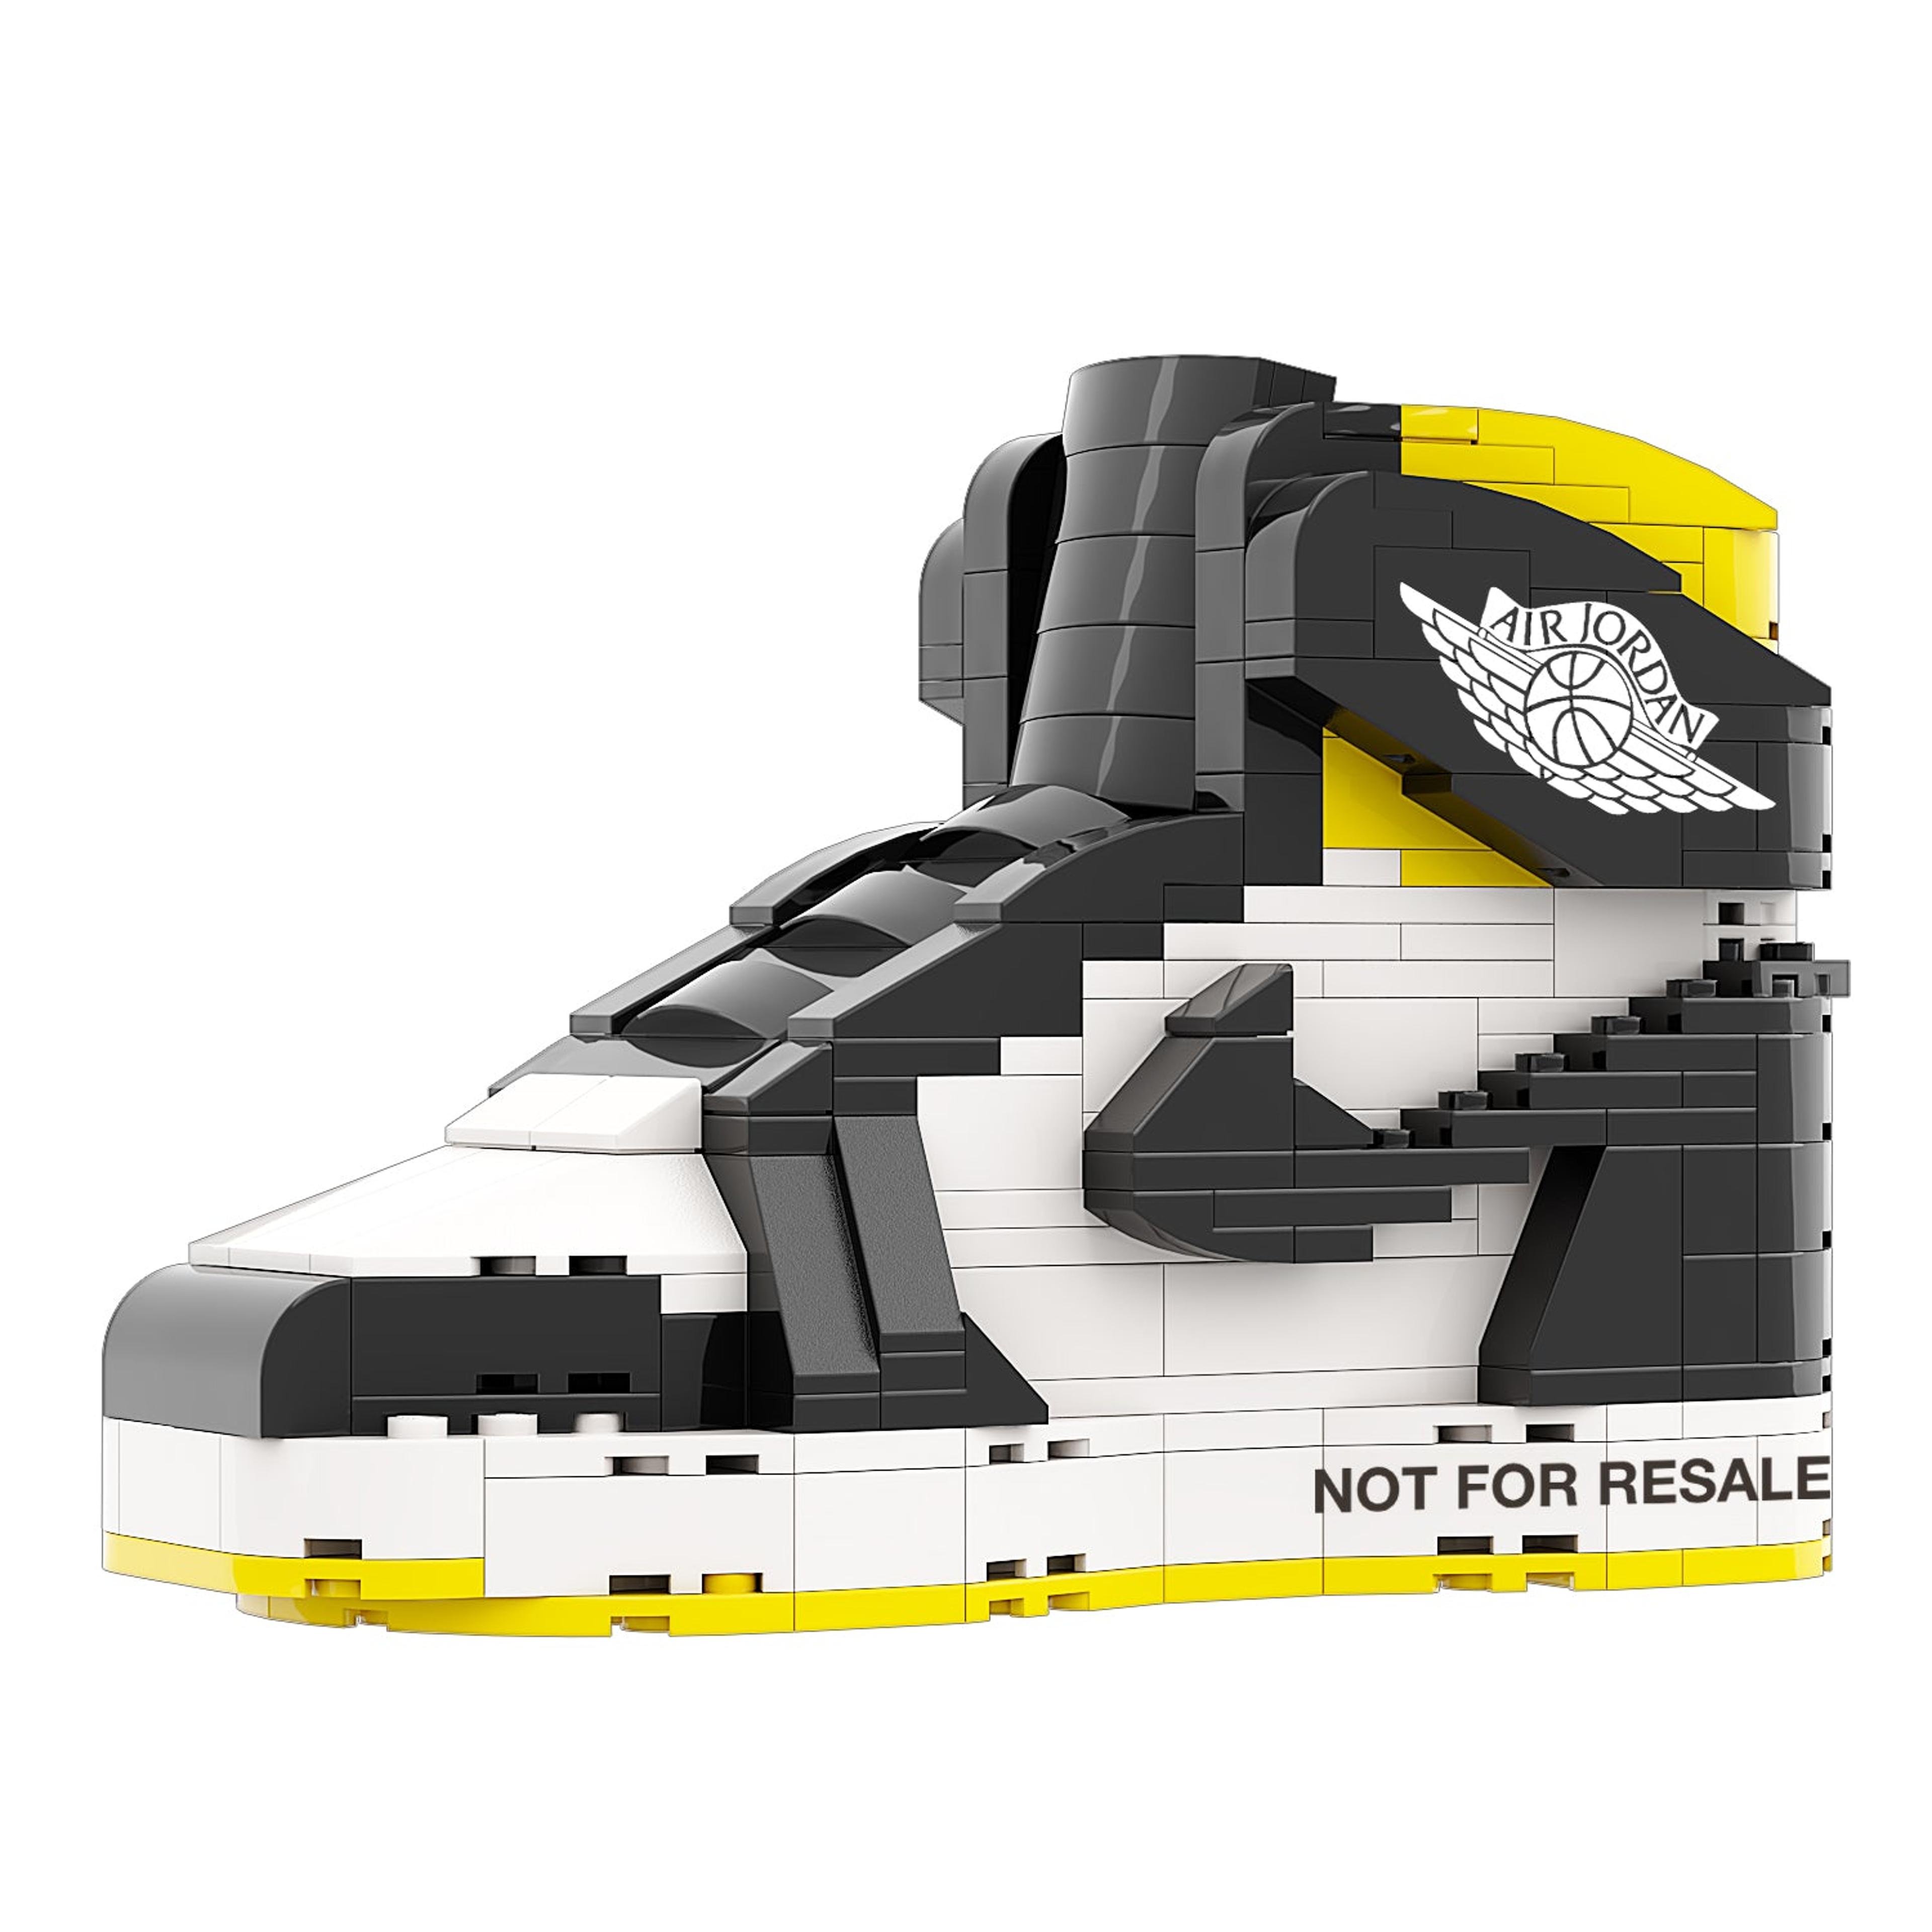 REGULAR "AJ1 NOT FOR RESALE Varsity Maize" Sneaker Bricks with M